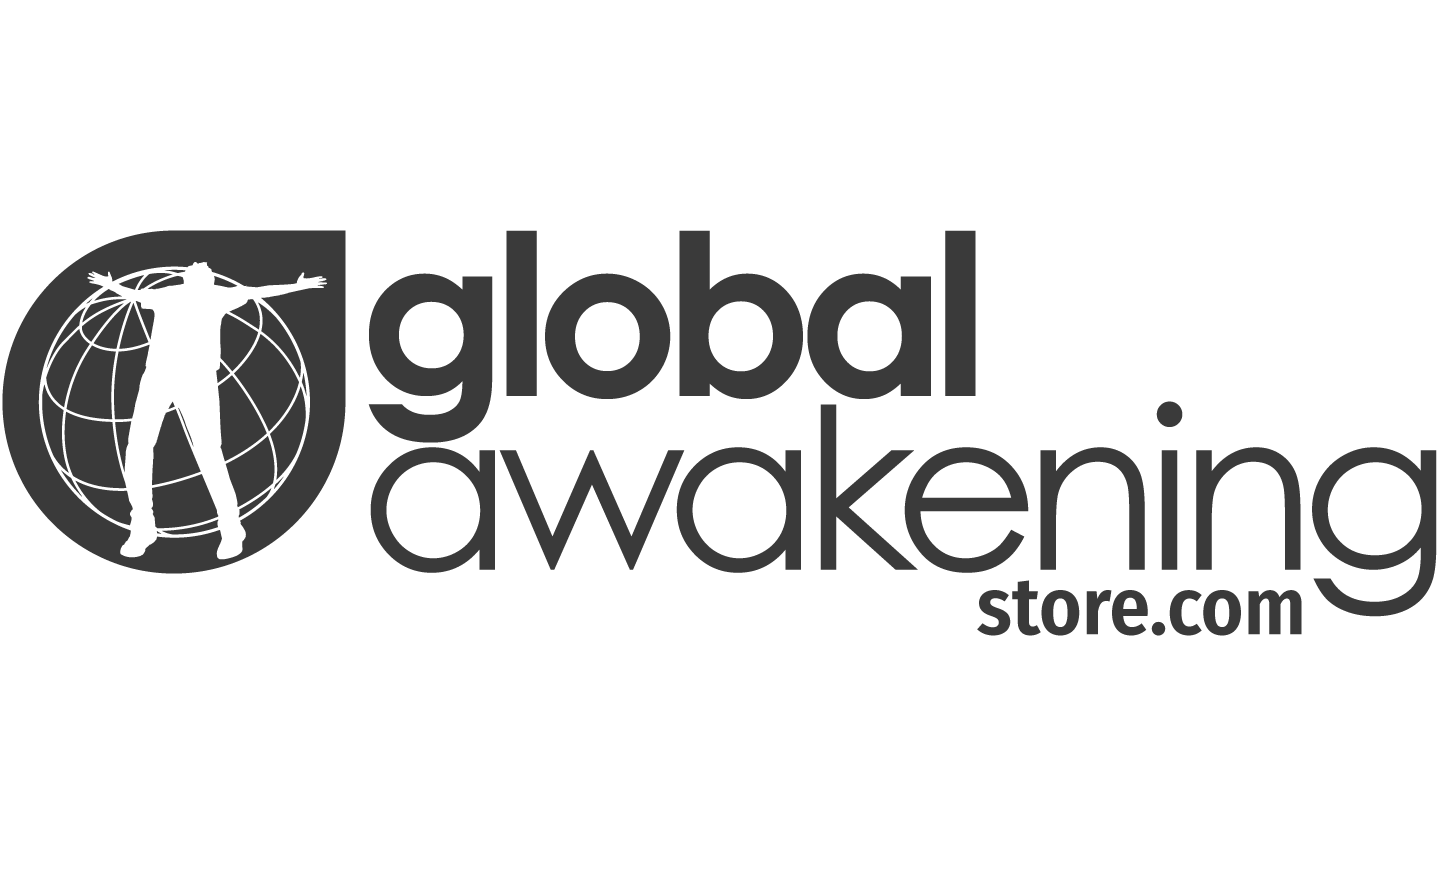 Awakening Logo - Revival CD by Gateway Worship - Global Awakening Online Store